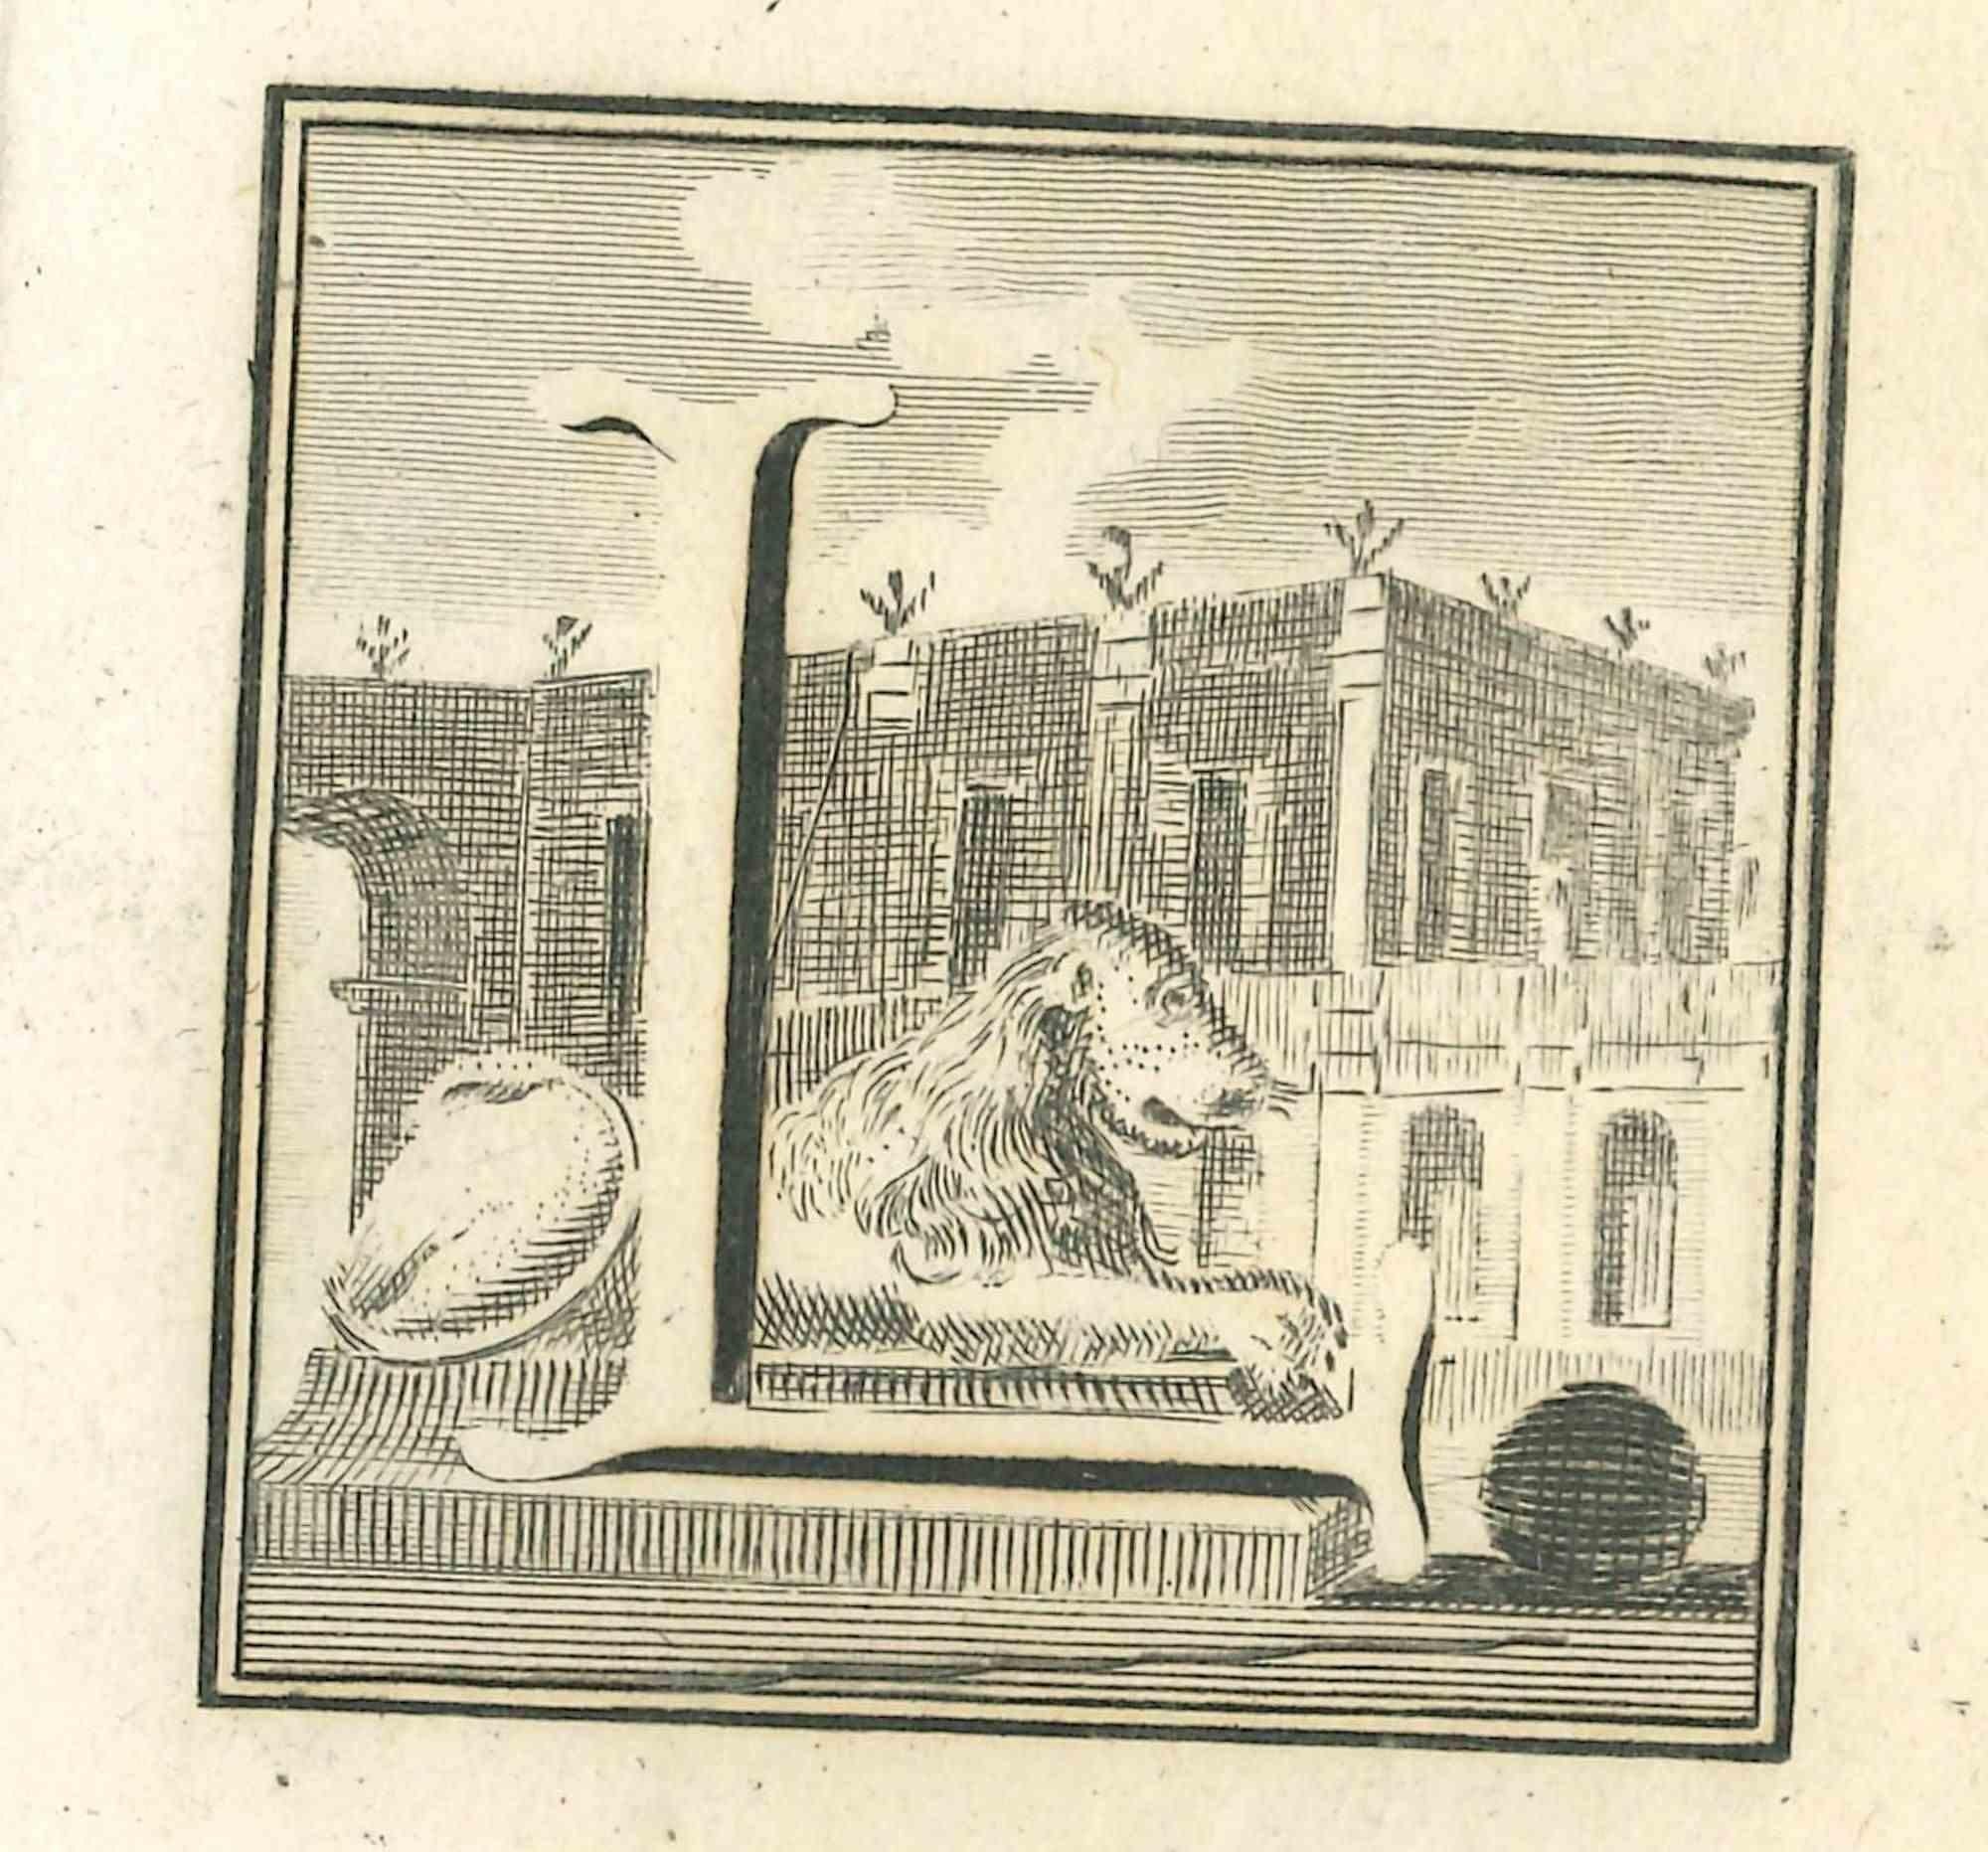 Lettre de l'alphabet L,  de la série "Antiquités d'Herculanum", est une gravure sur papier réalisée par Luigi Vanvitelli au 18ème siècle.

Bonnes conditions.

La gravure appartient à la suite d'estampes "Antiquités d'Herculanum exposées" (titre